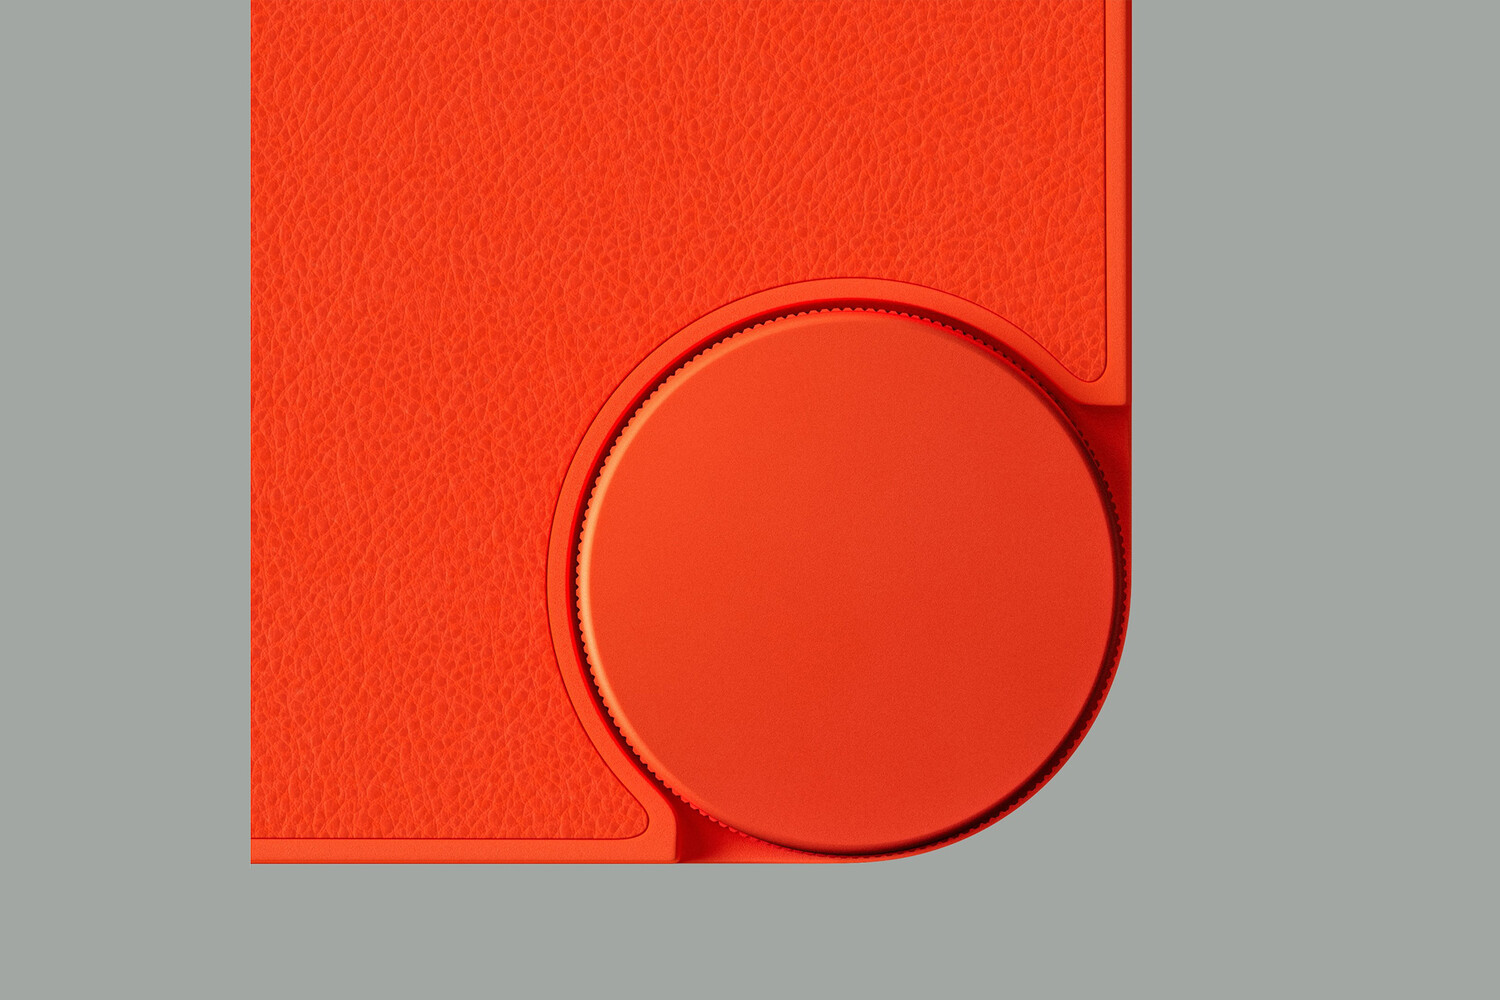 Суббренд Nothing CMF представил оранжевый смартфон Phone 1 с уникальным дизайном